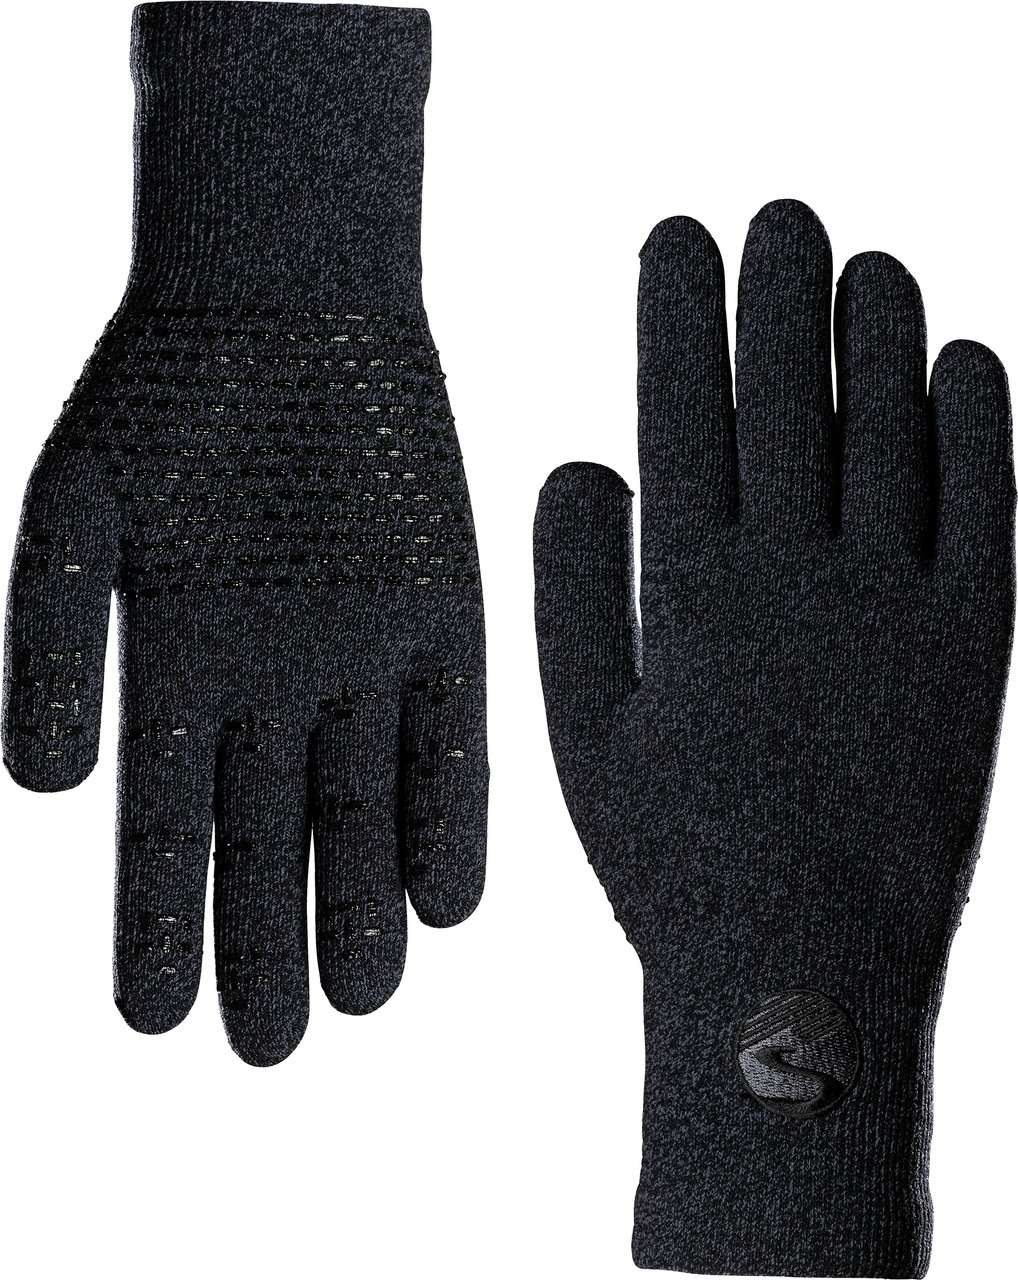 Crosspoint Waterproof Knit Wool Gloves Heather Black